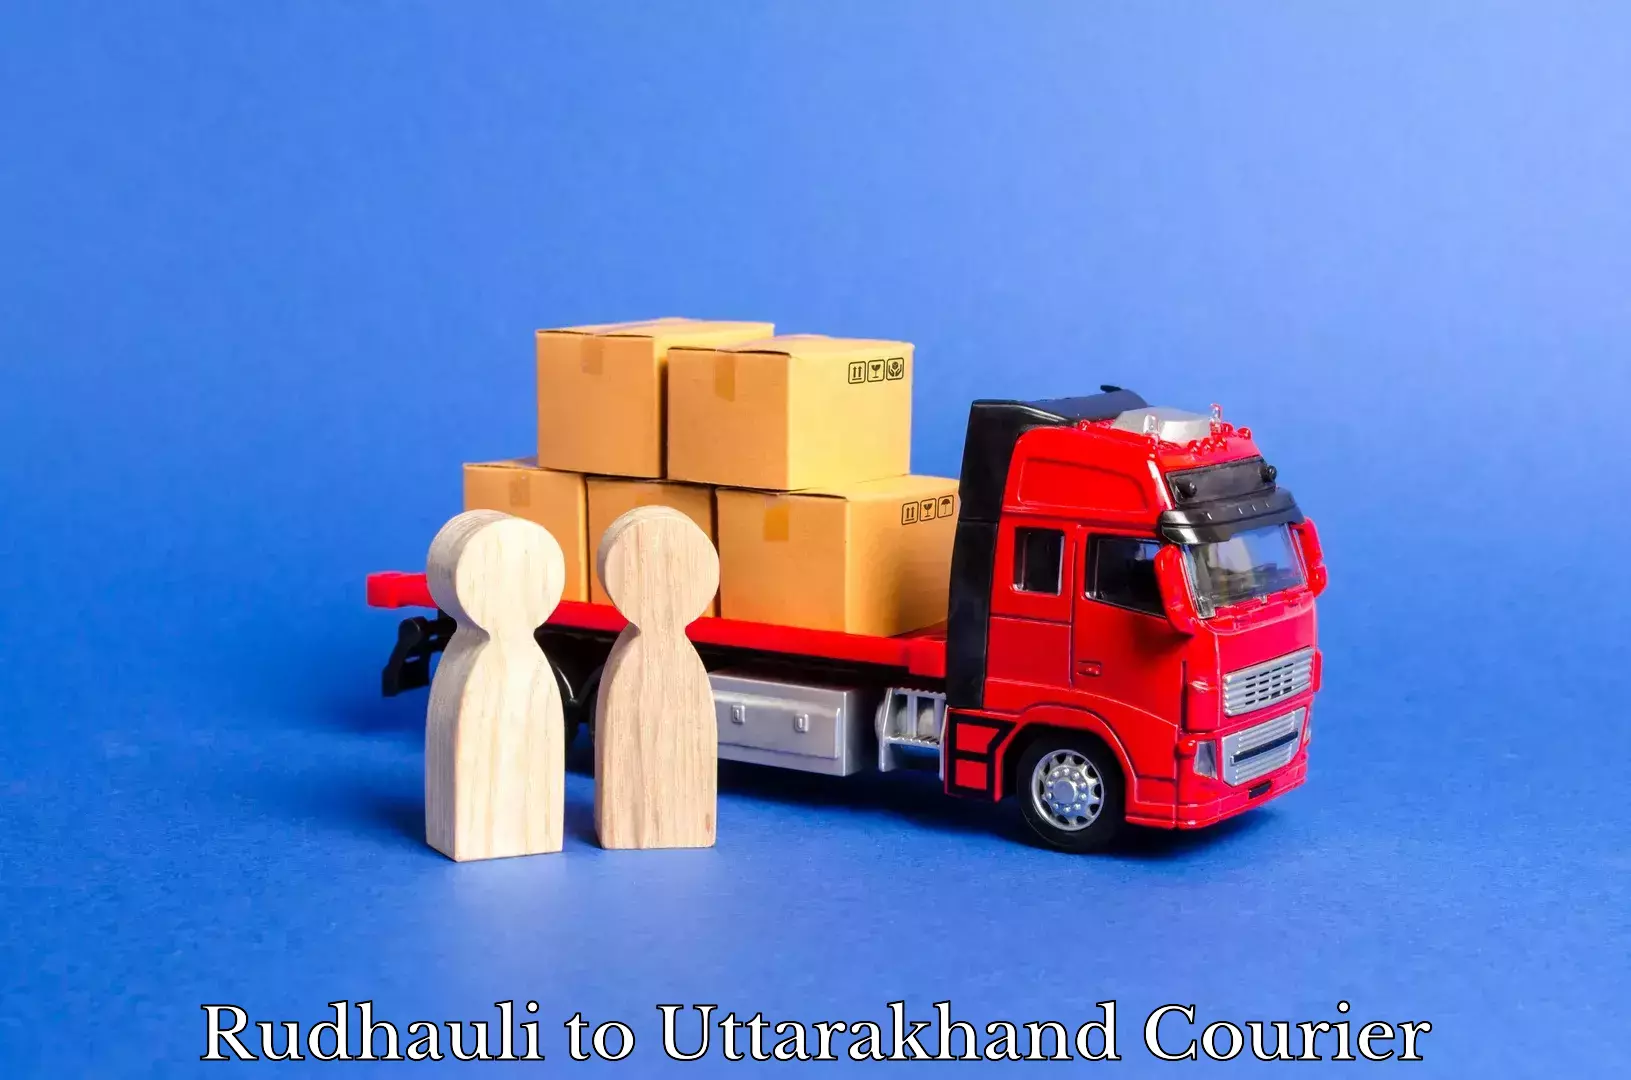 Dynamic courier operations Rudhauli to Uttarakhand